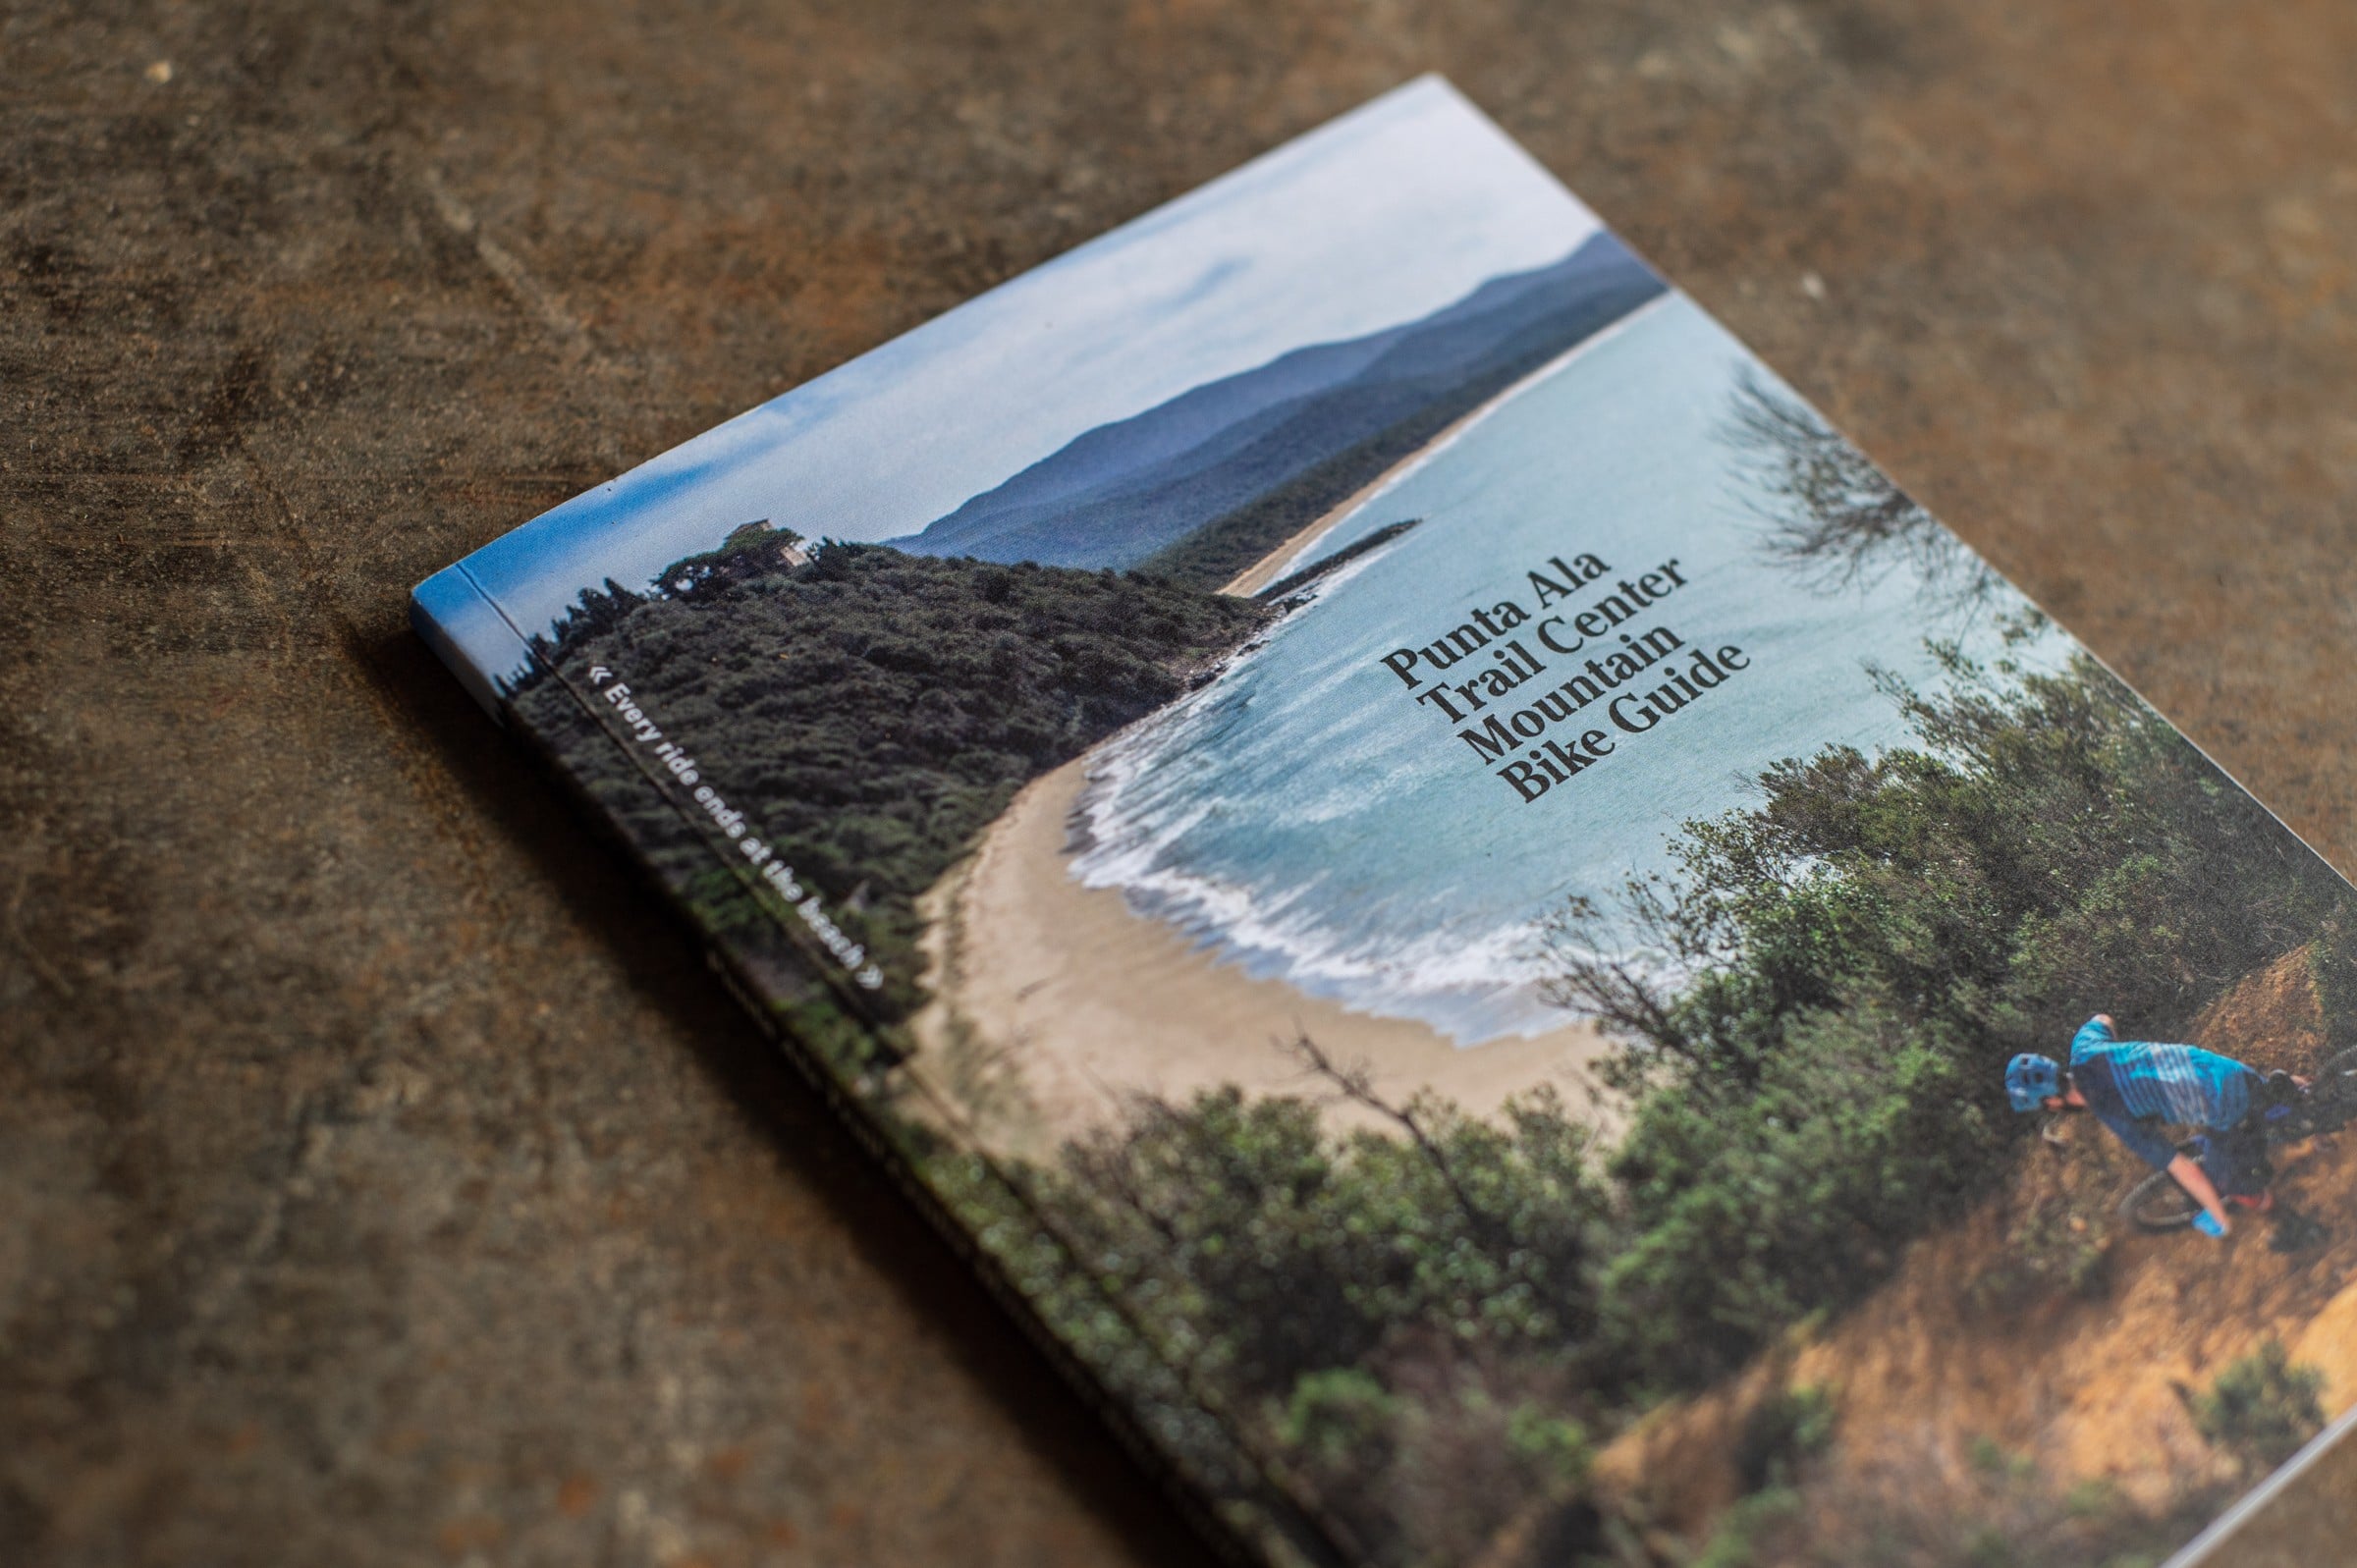 Punta-ala-trail-center-guide-book-5977